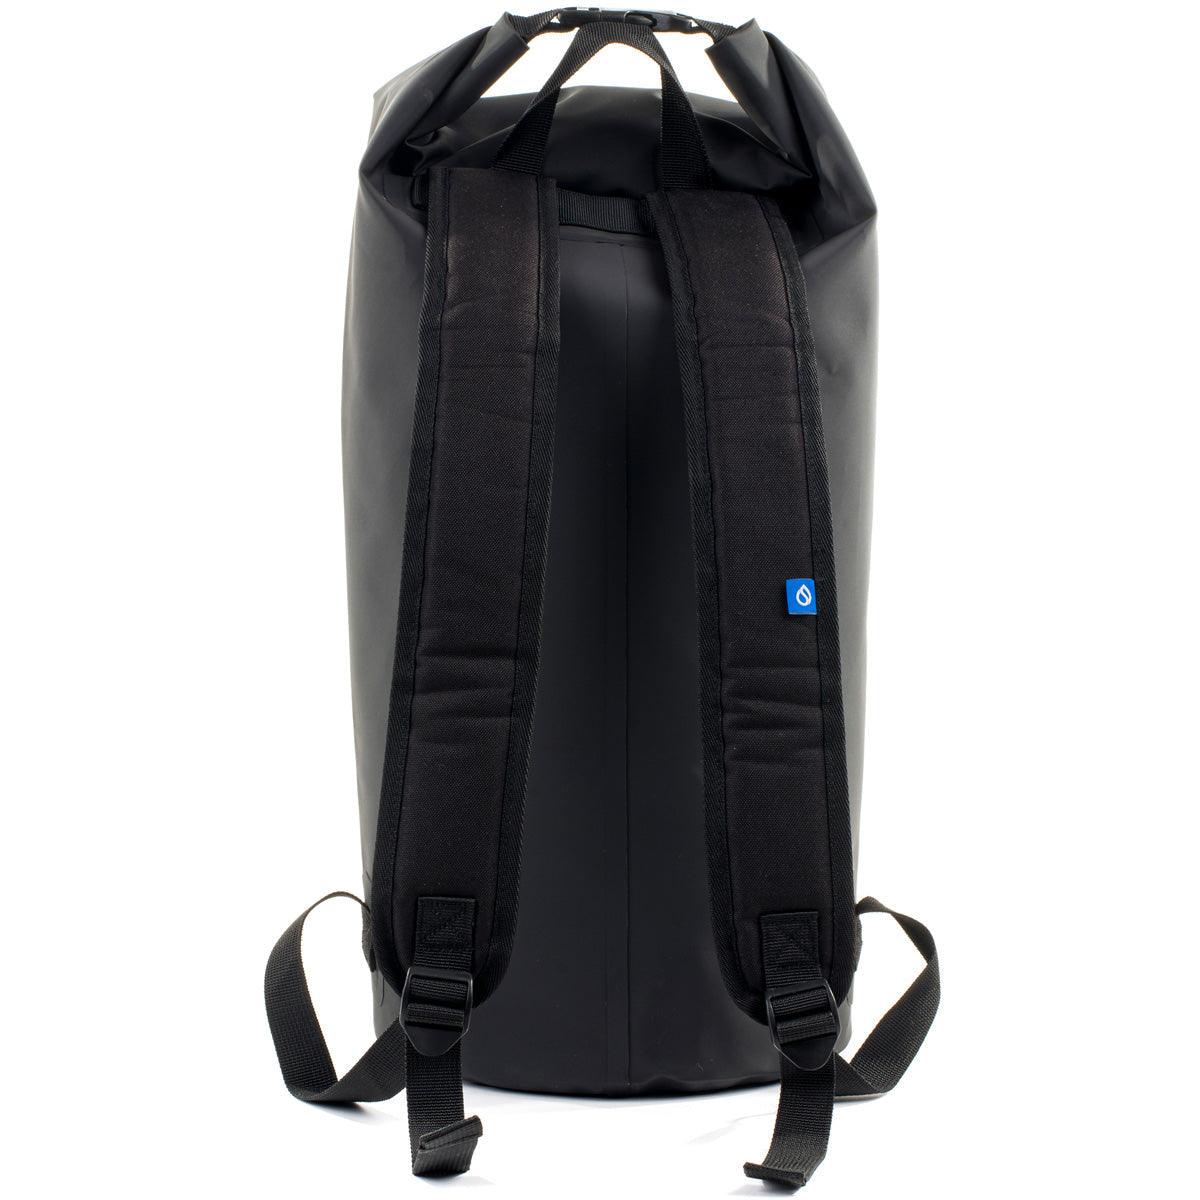 Surflogic Dry Tube Backpack - Kitesurf